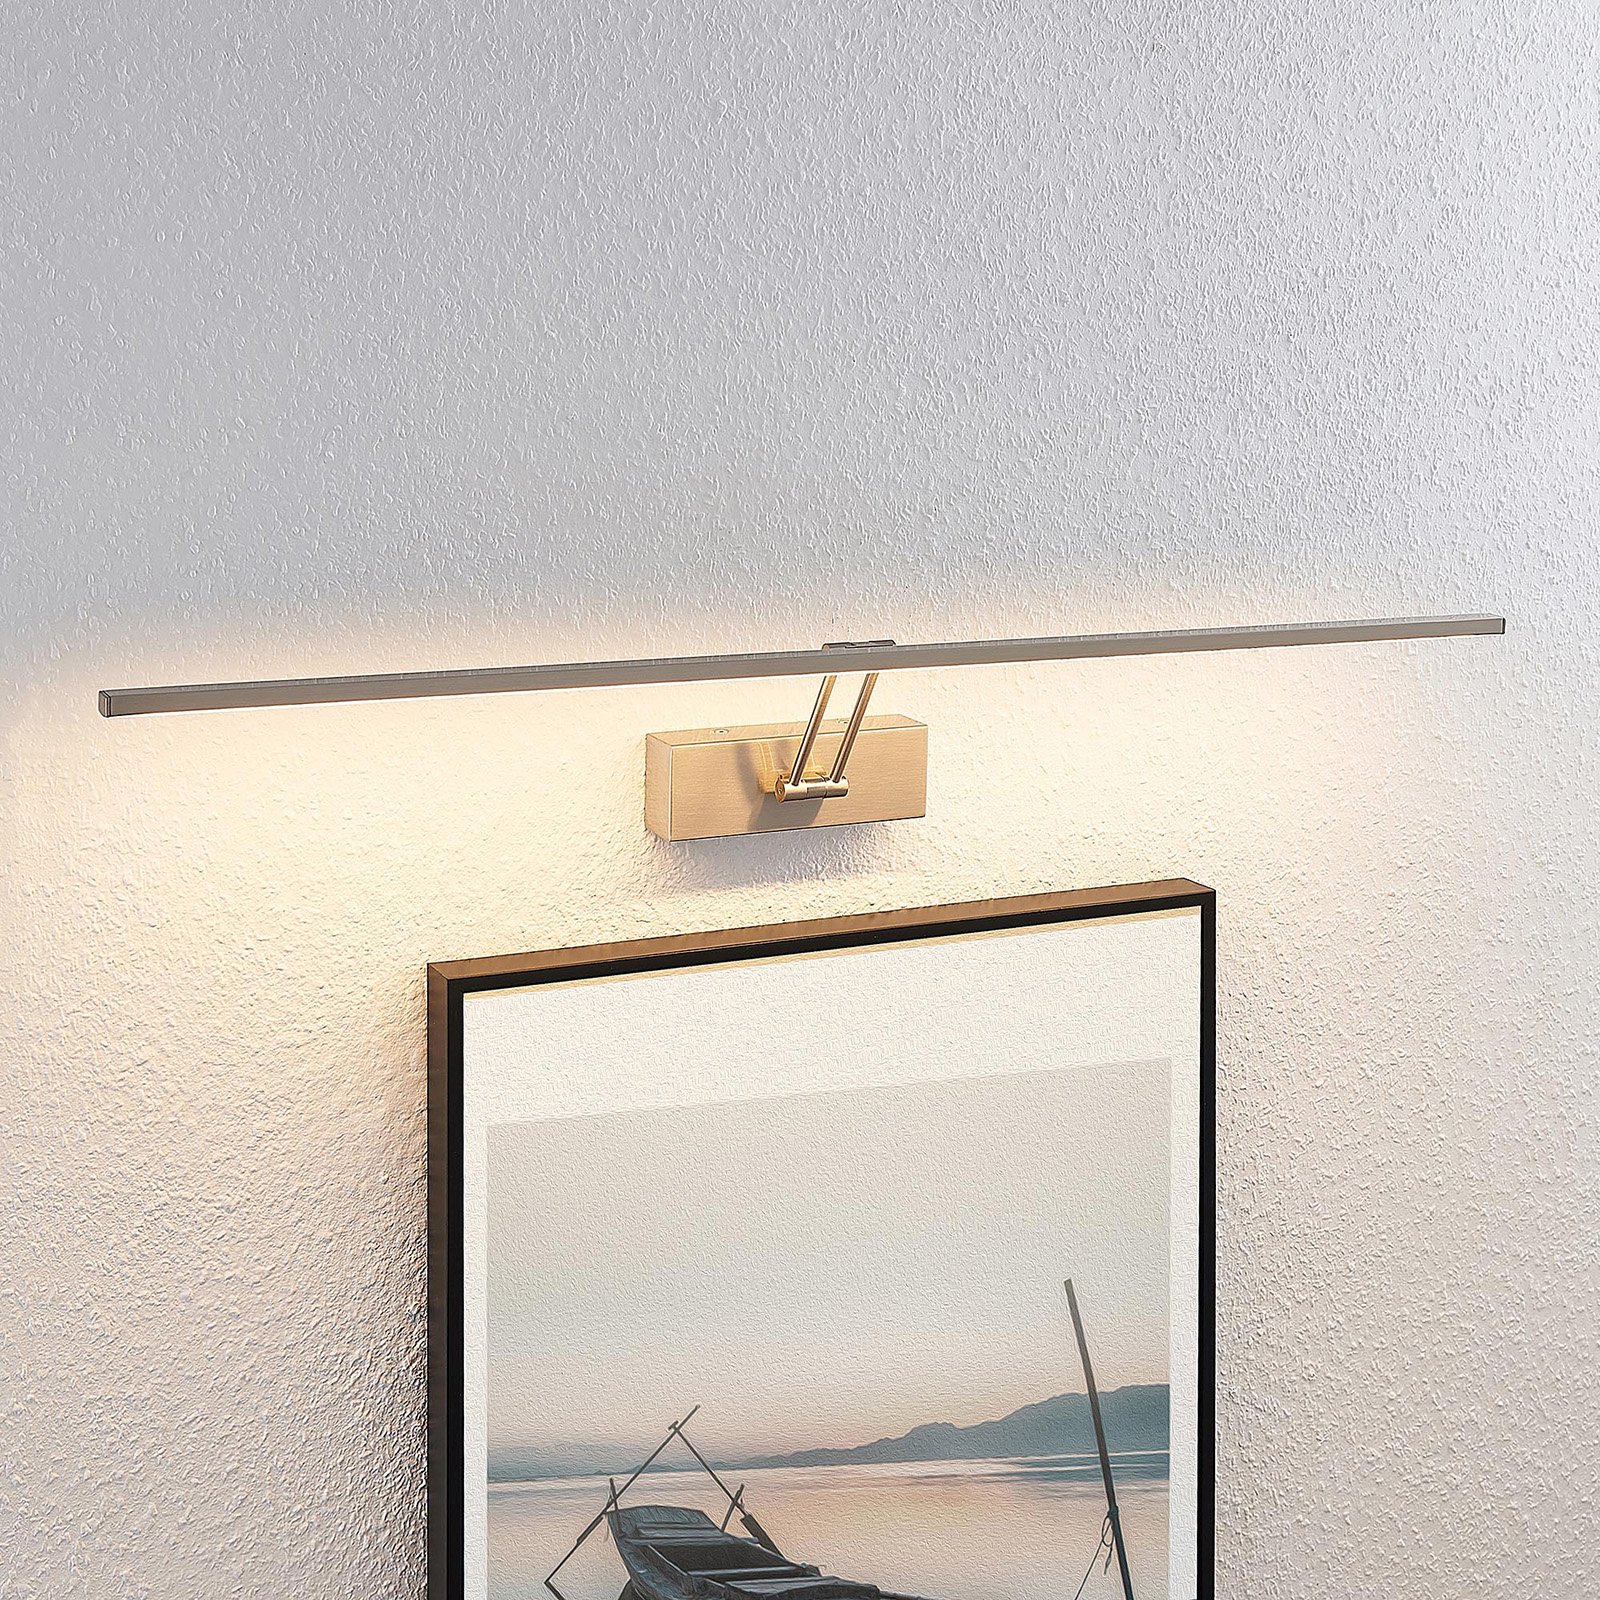 Lucande Thibaud LED kép világítás, nikkel, 83,4 cm